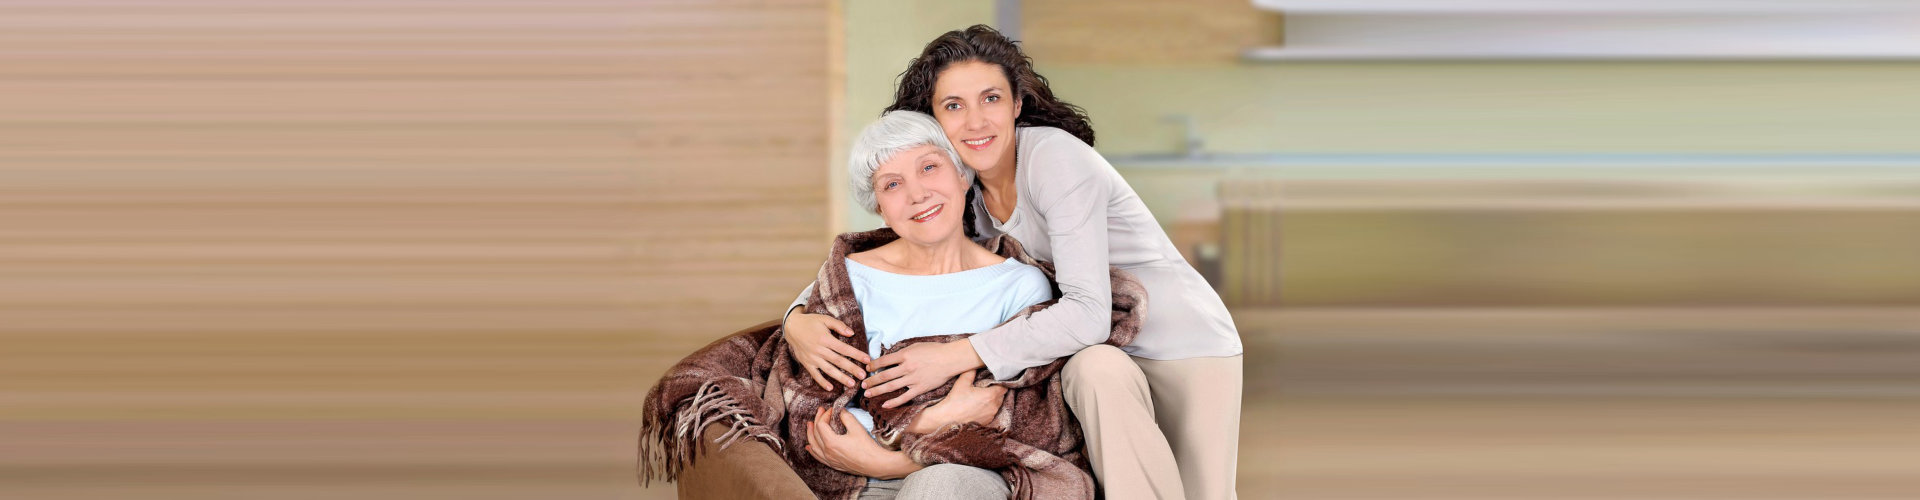 caregiver hugging the elderly